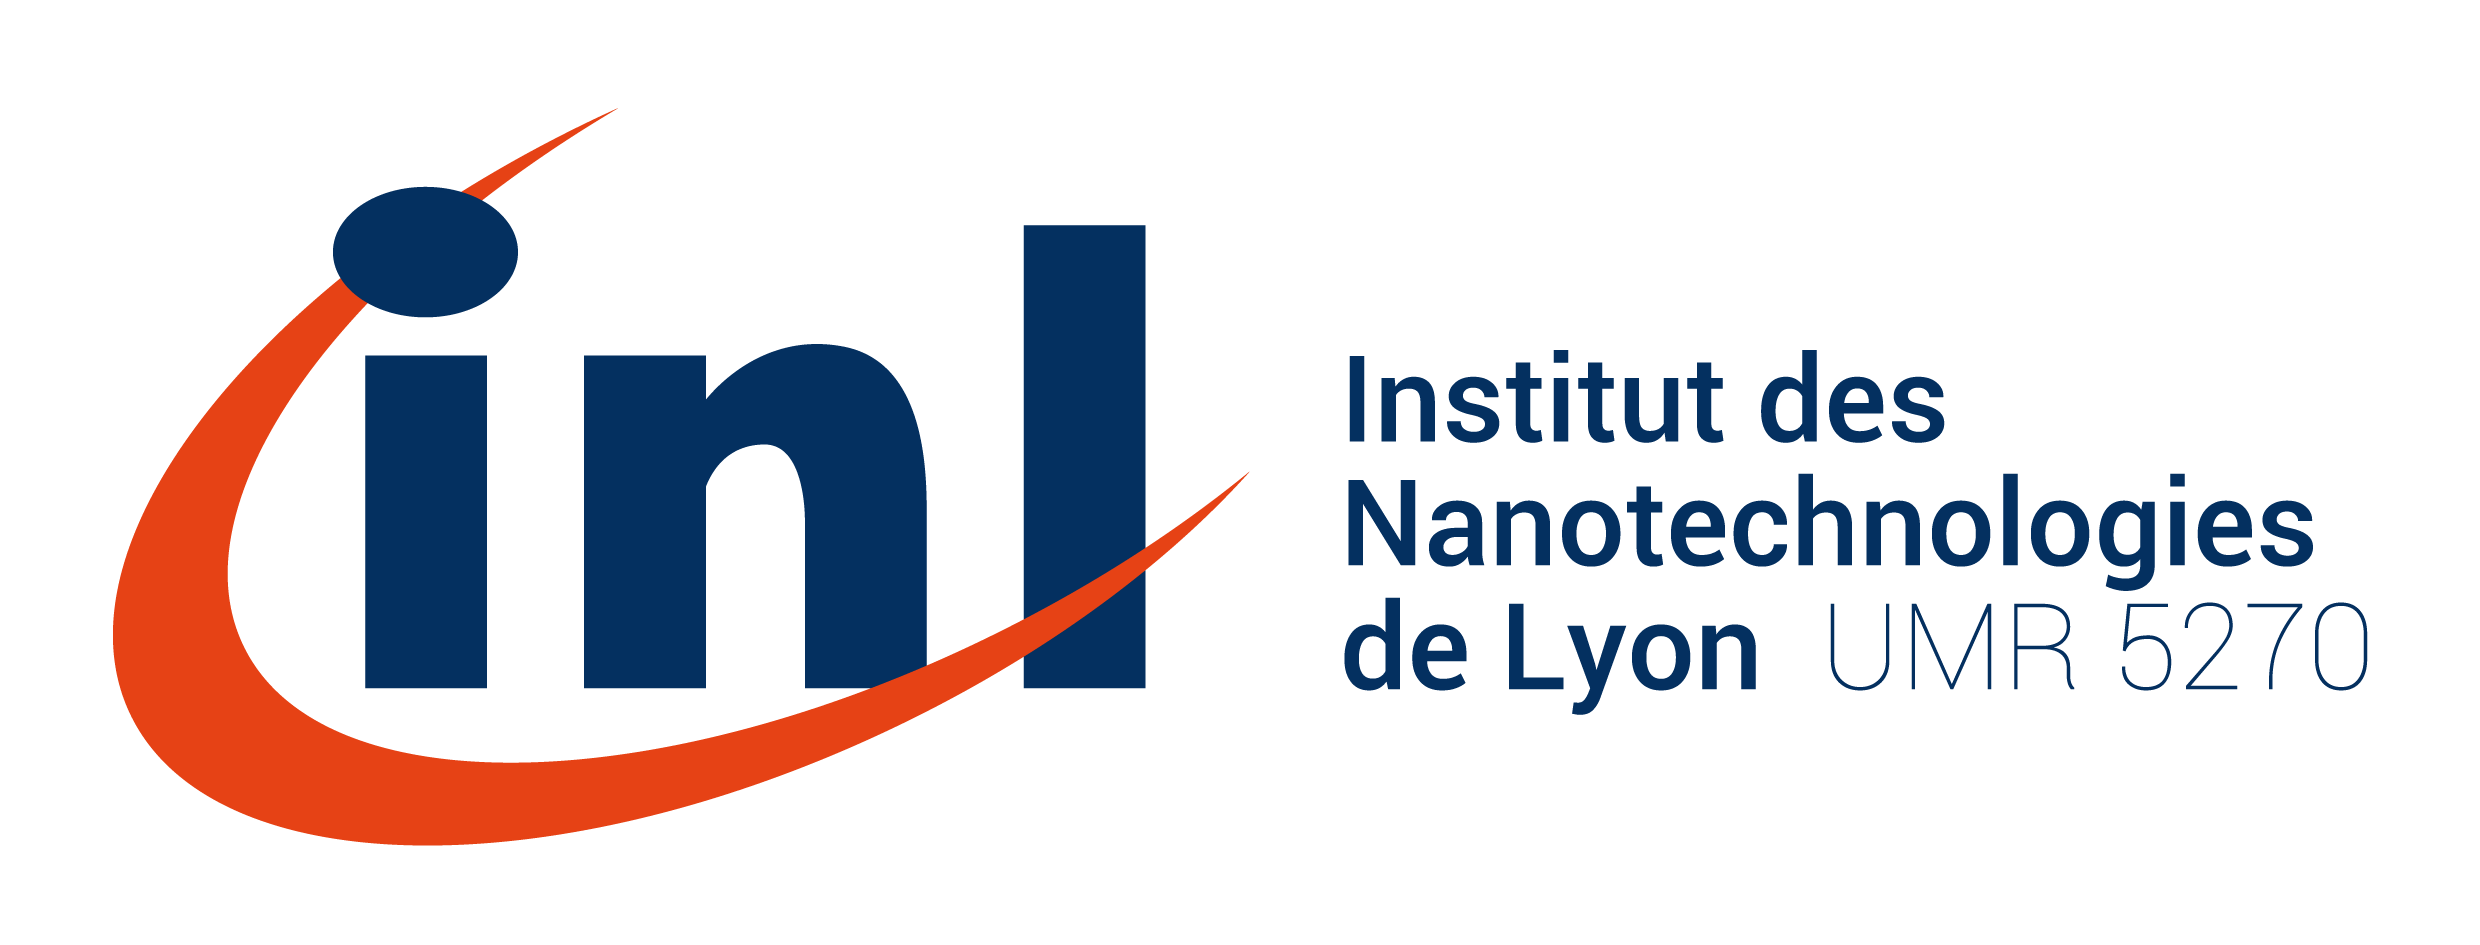 Nouveau logo INL